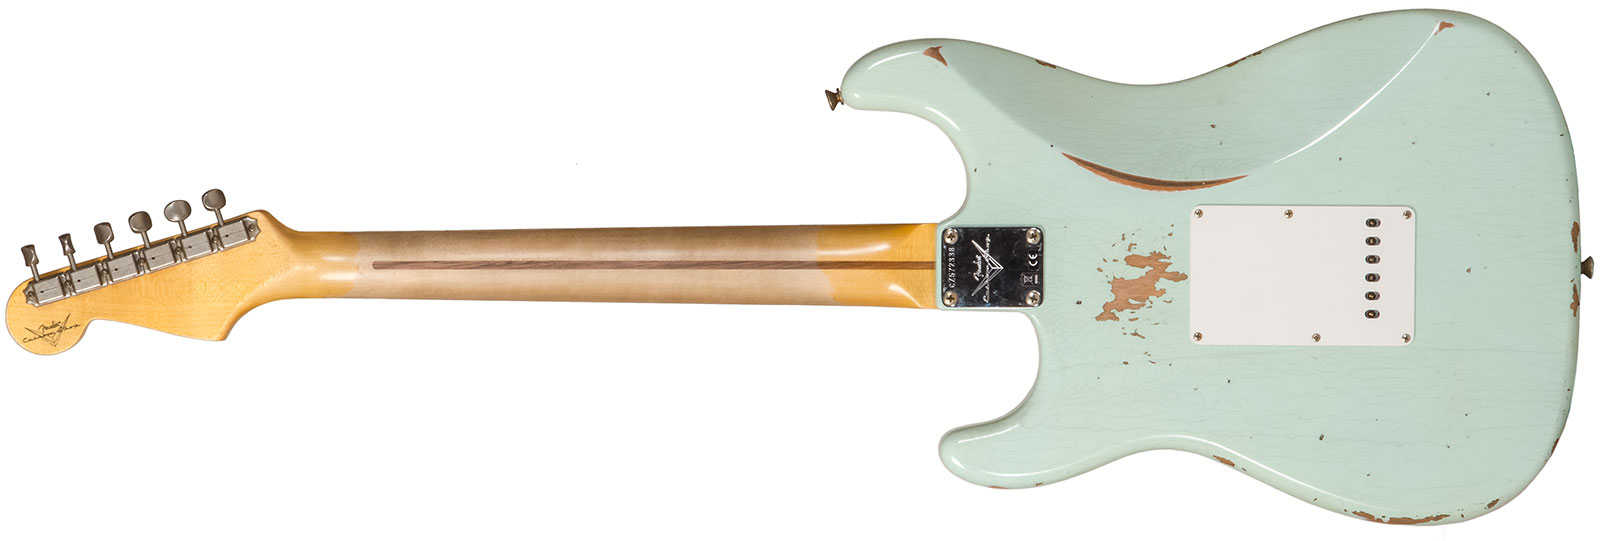 Fender Custom Shop Strat 1958 3s Trem Mn #cz572338 - Relic Aged Surf Green - Guitare Électrique Forme Str - Variation 1